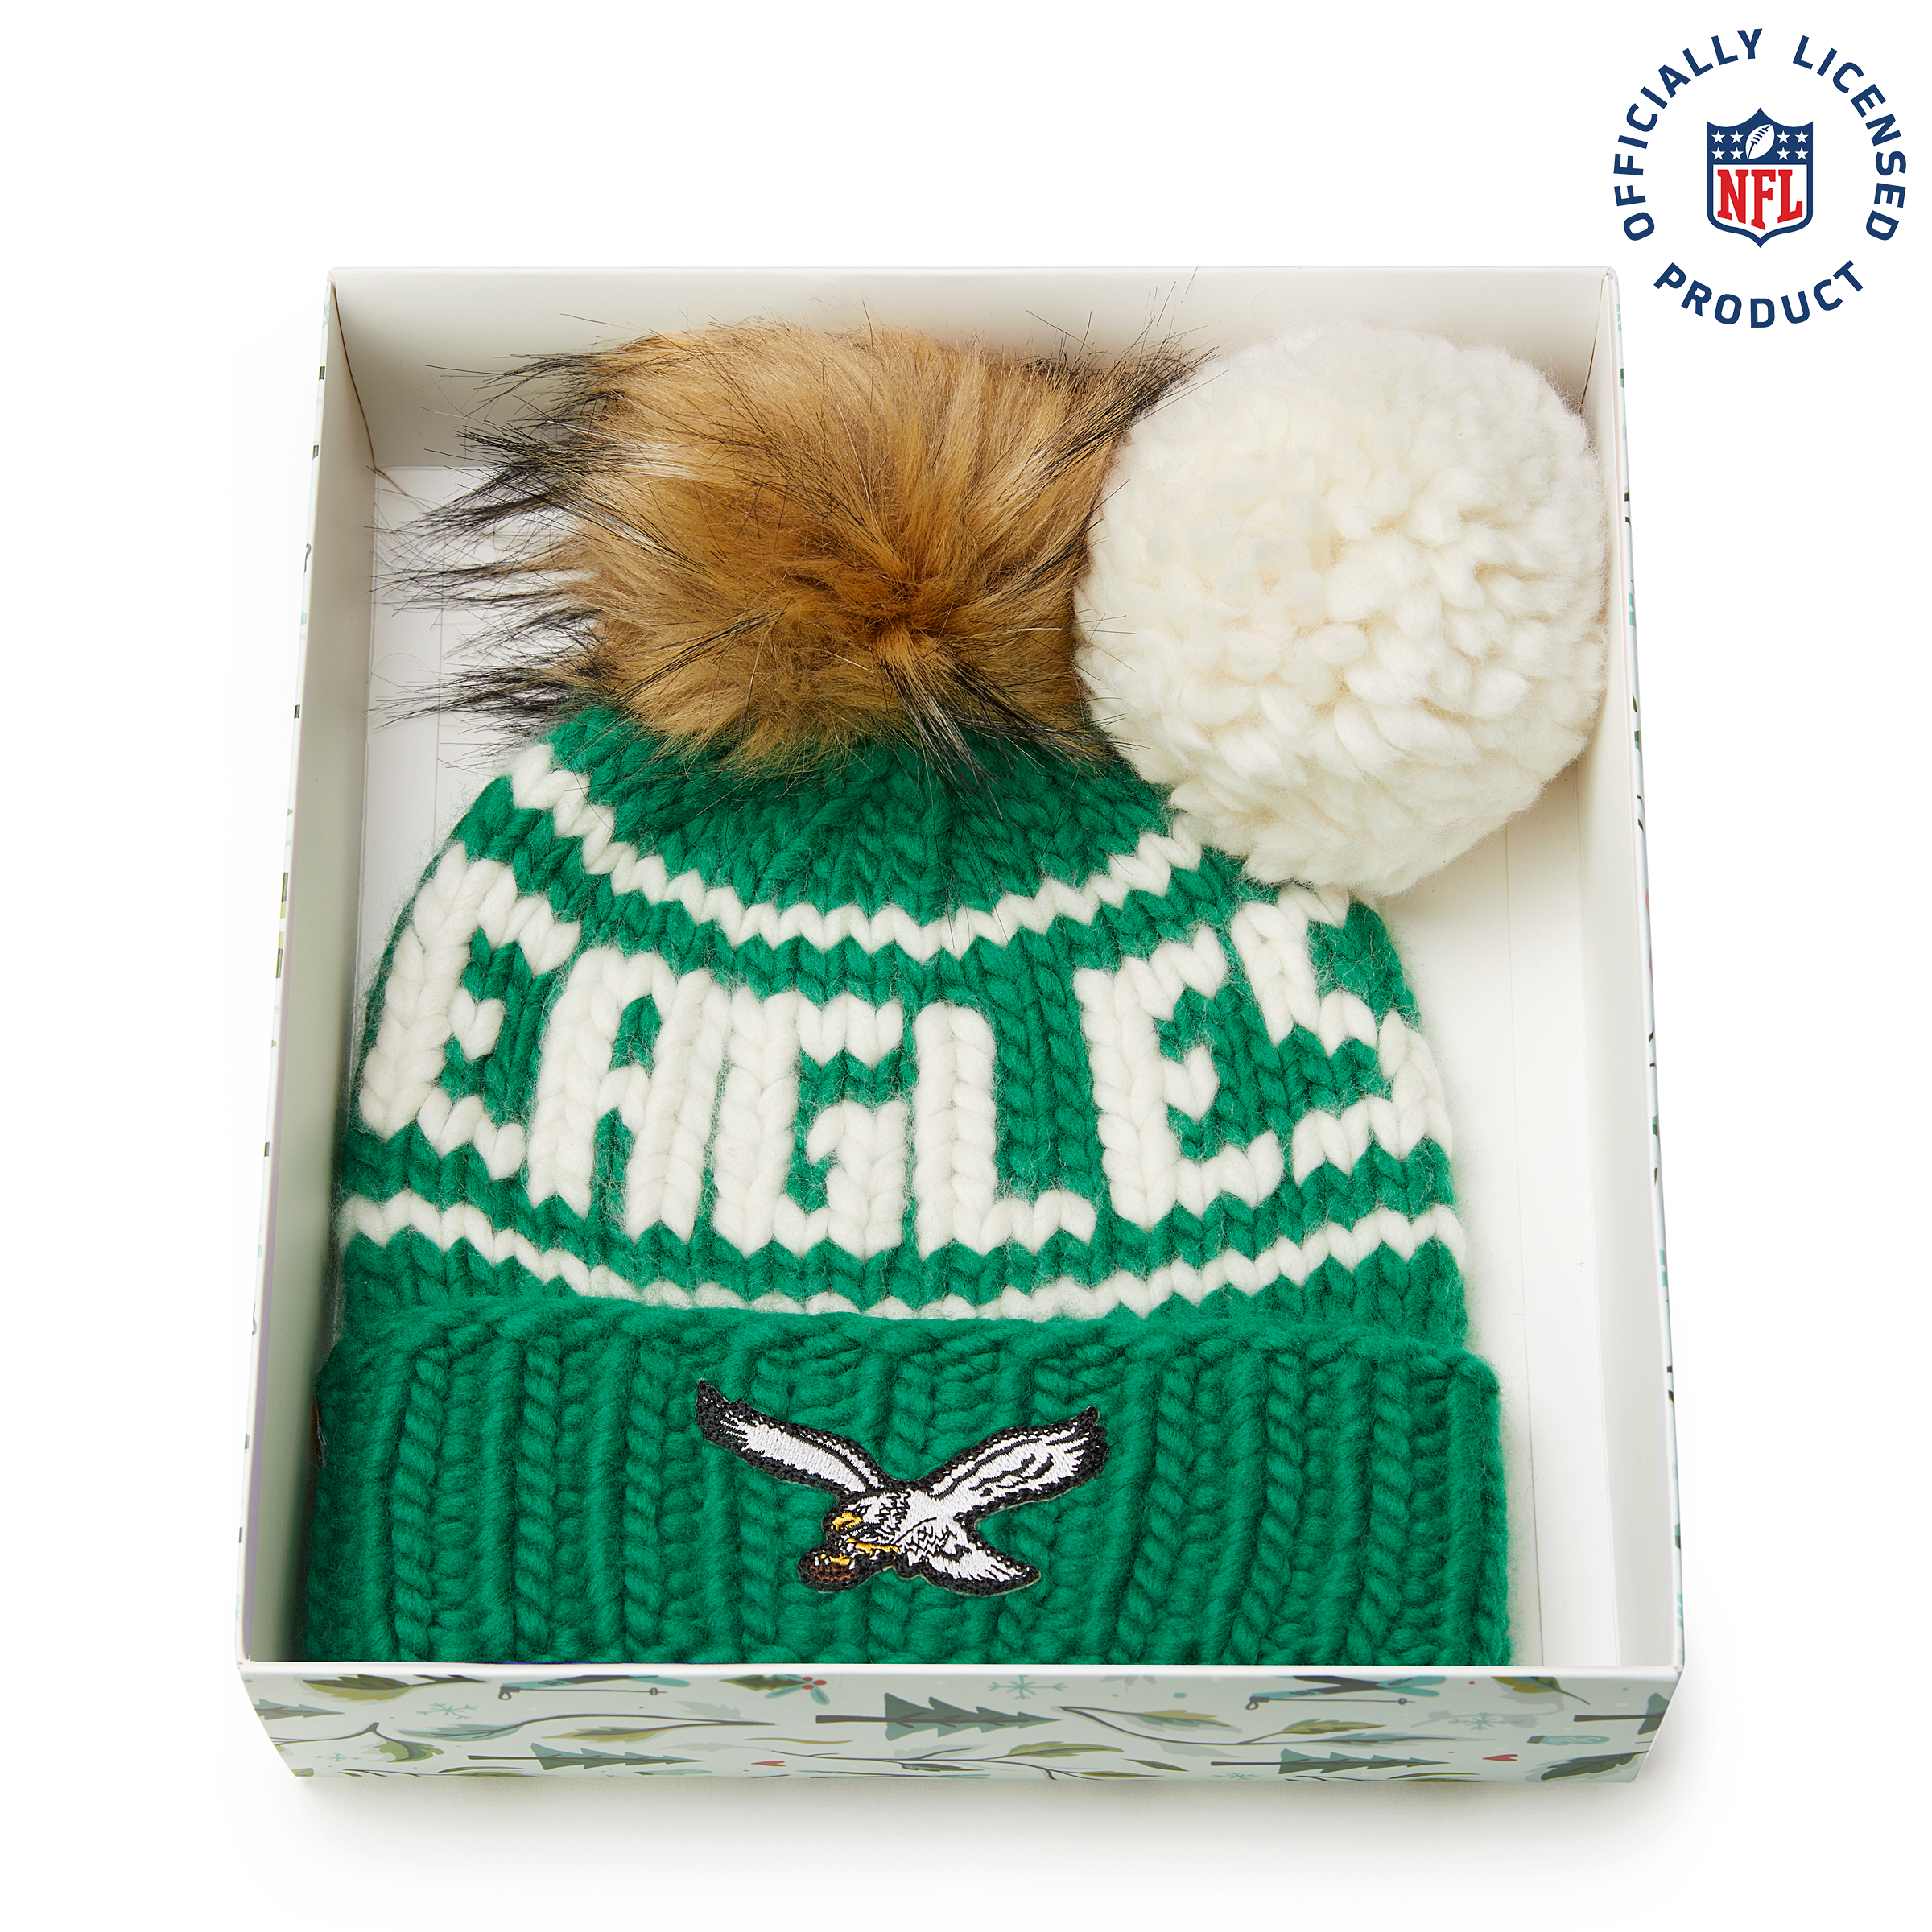 The Retro Eagles NFL Beanie Gift Set